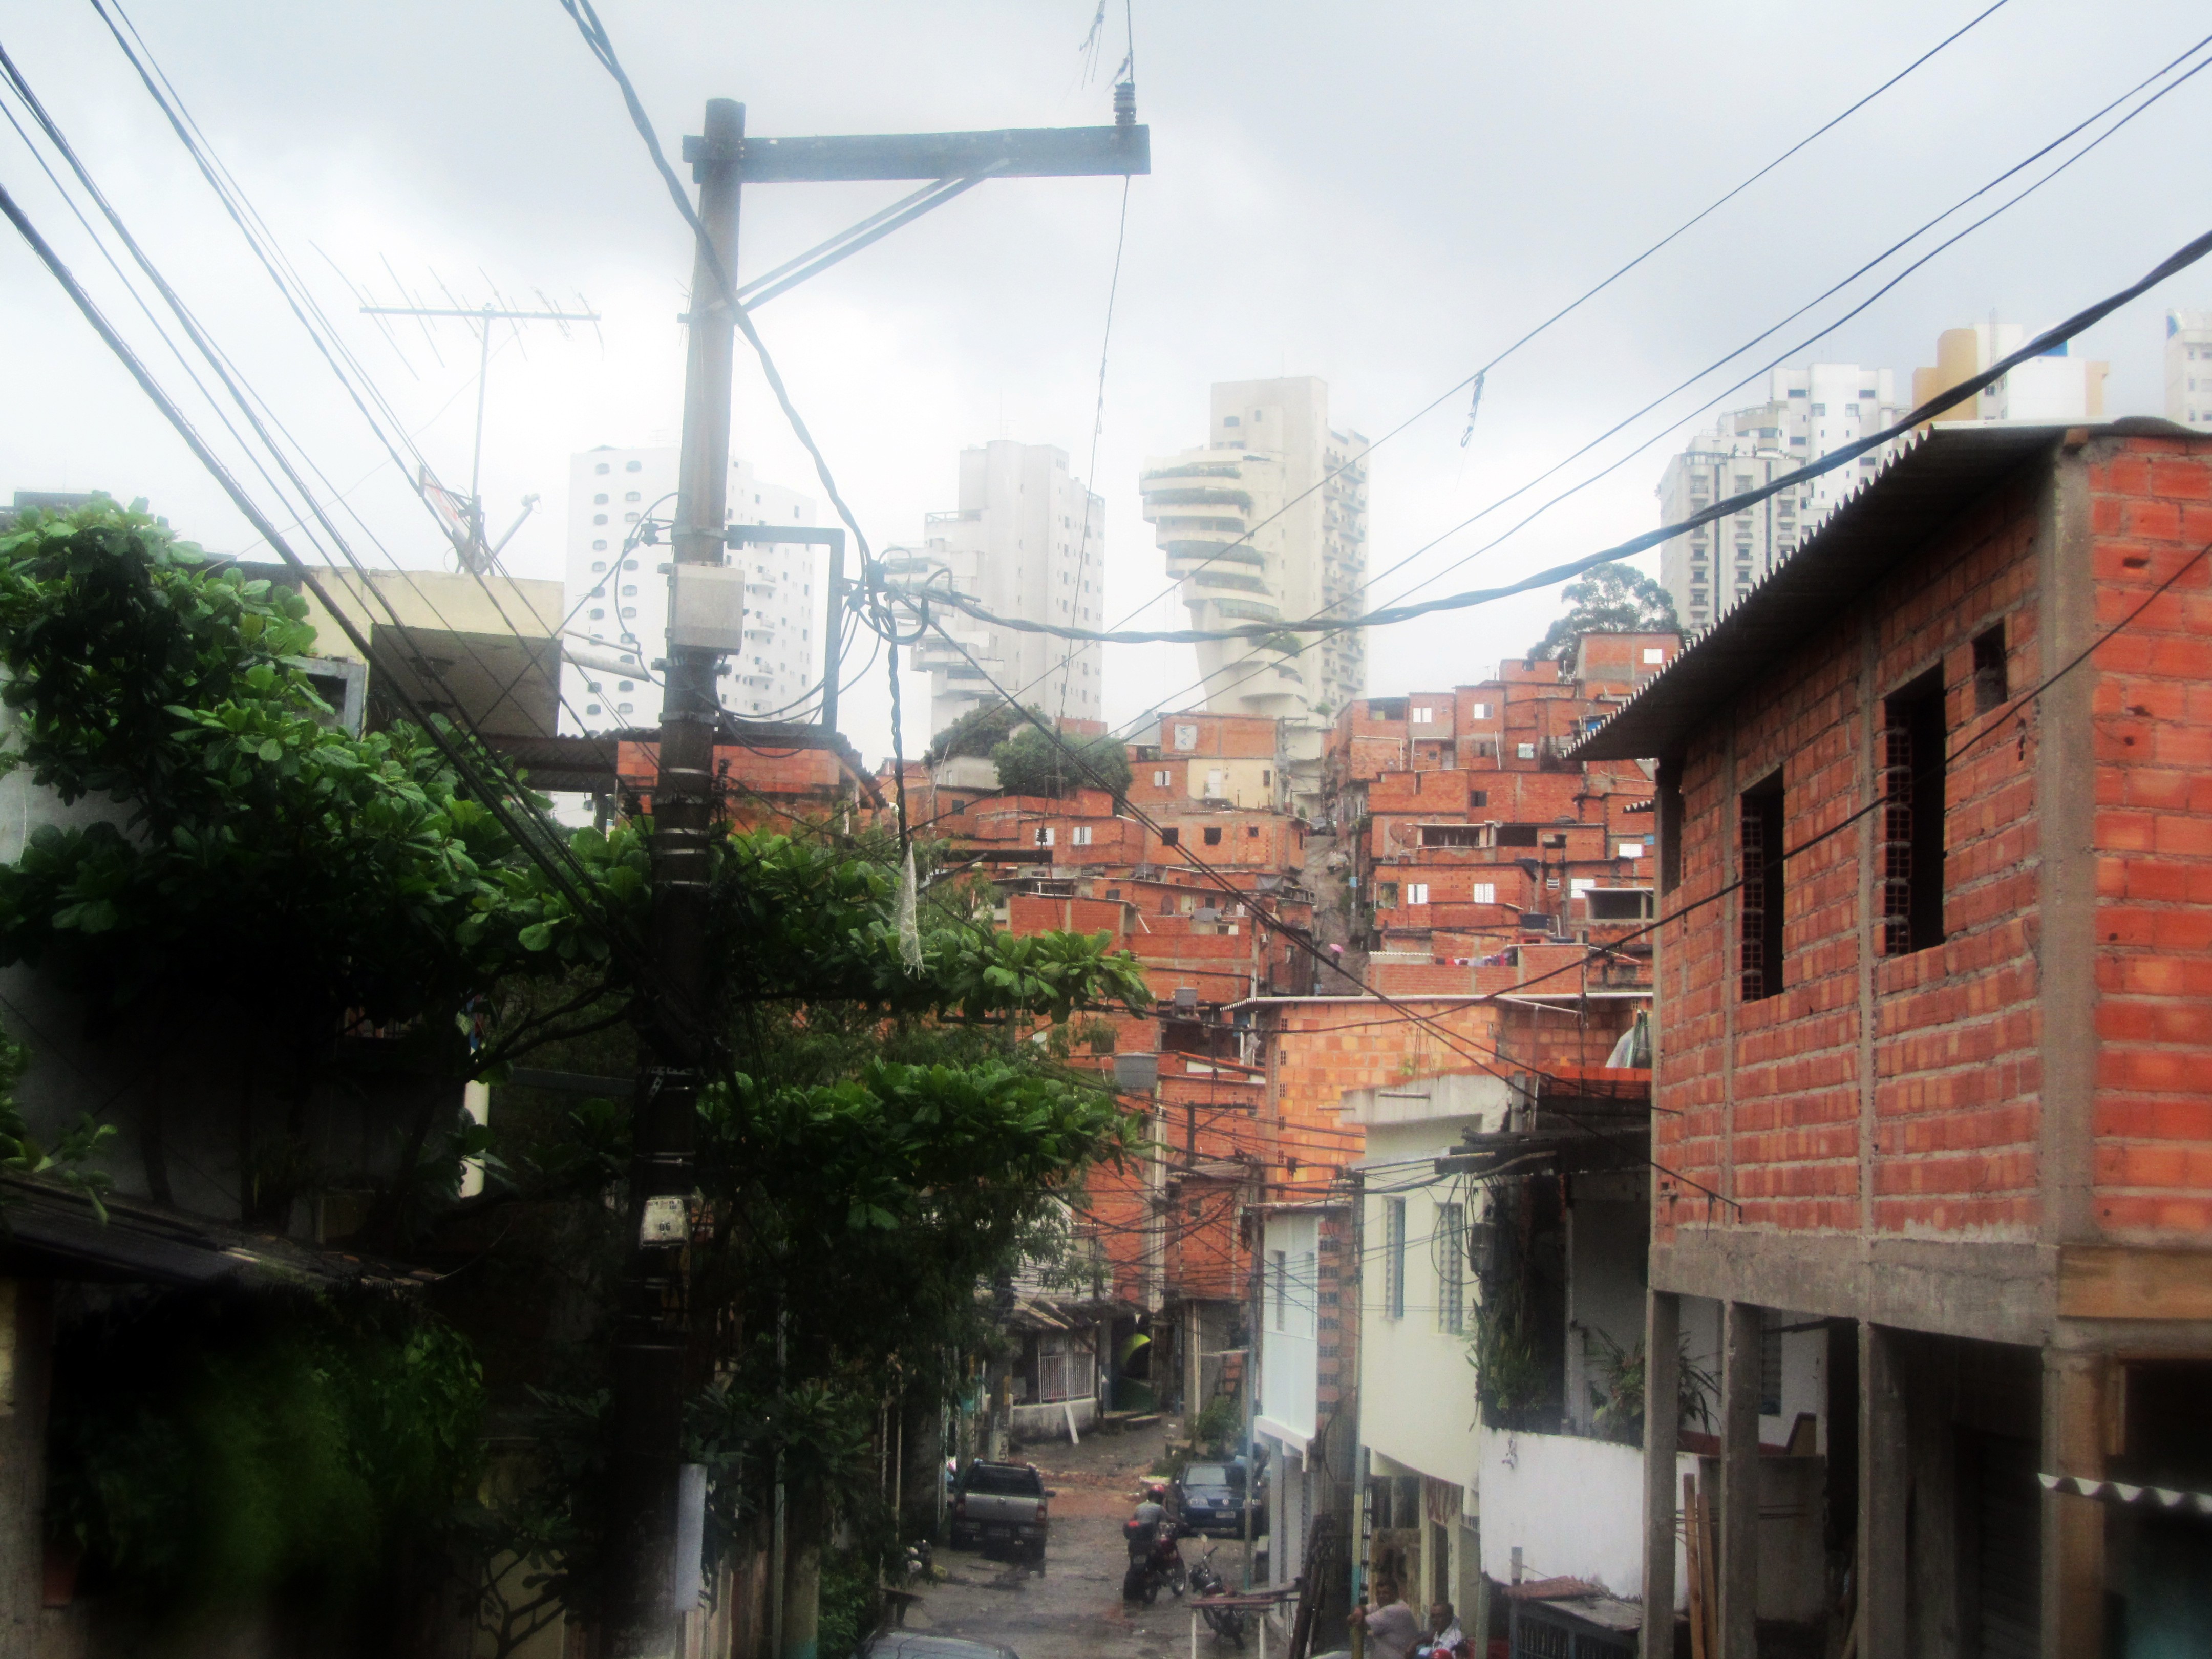 Paraisopolis (Sao Paulo) viewed from the street.